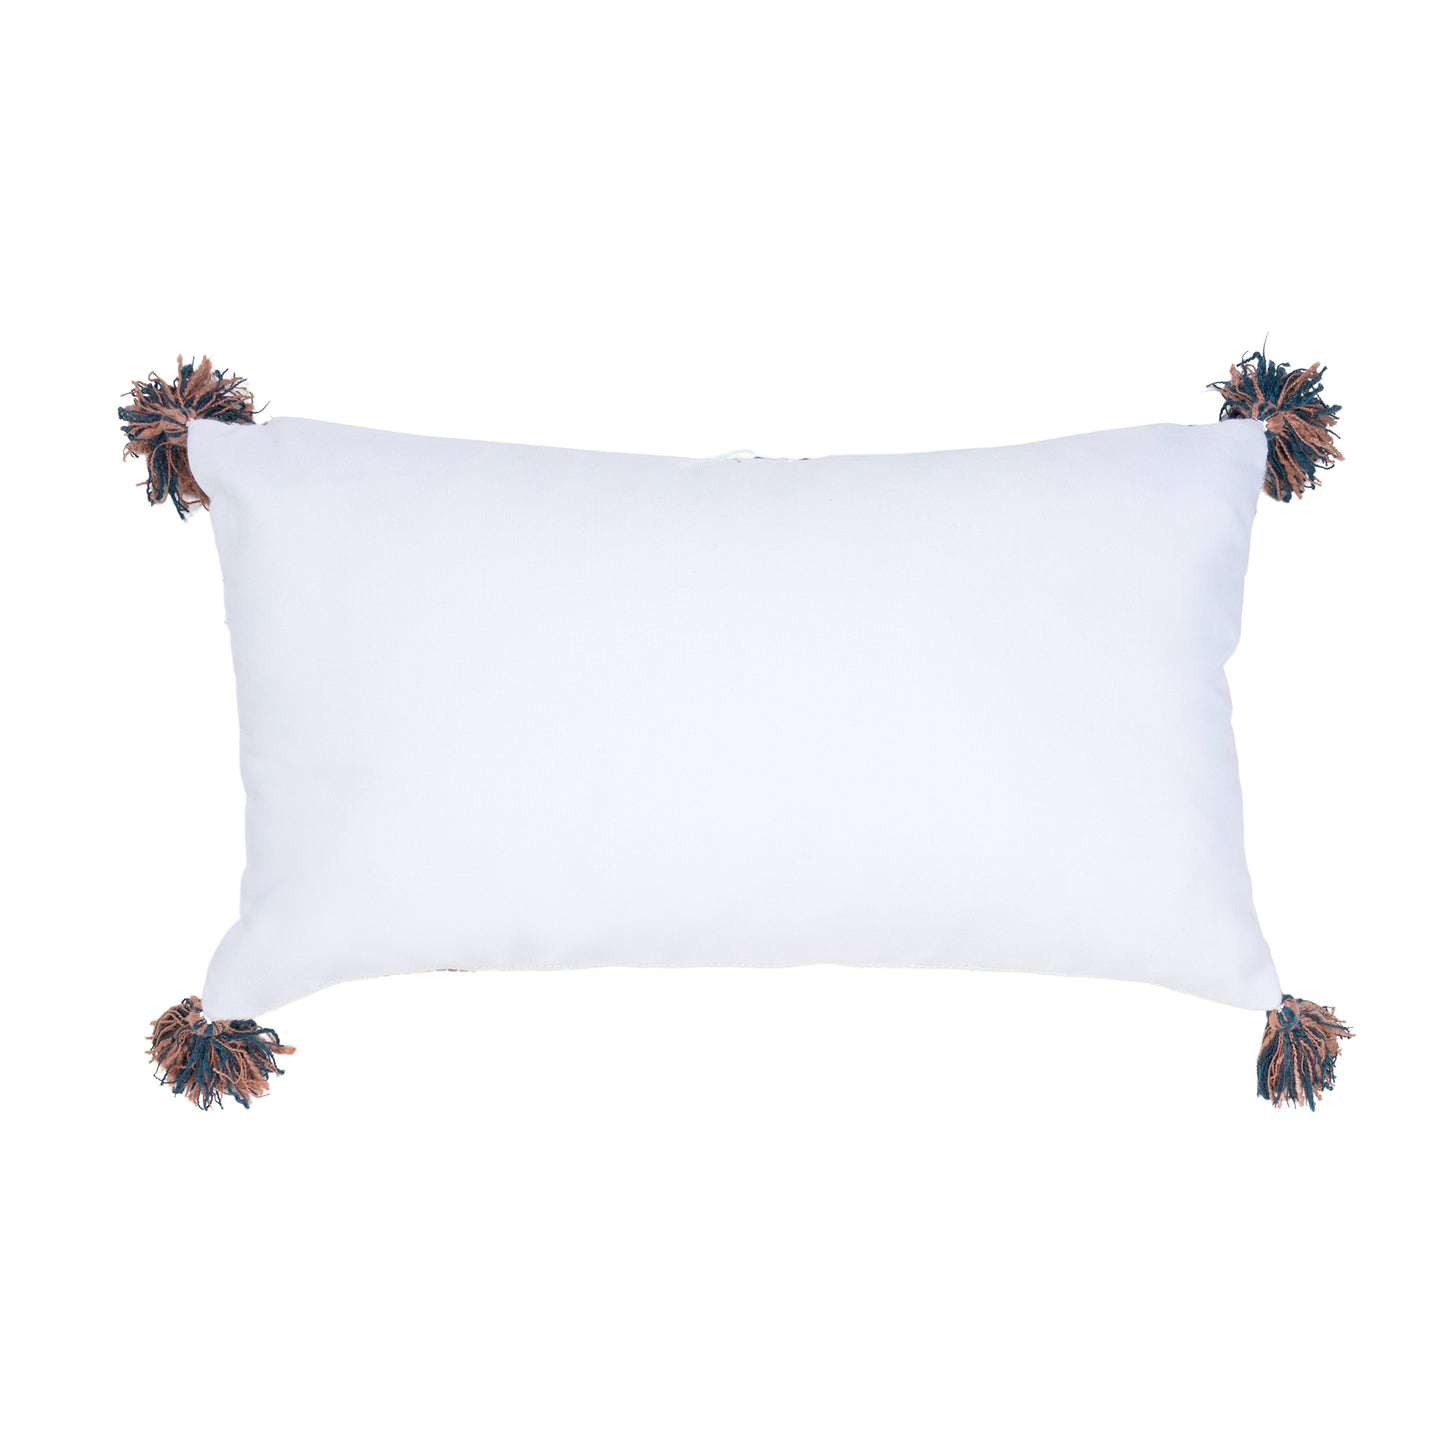 Tylanne 12X22" Handwoven Striped Indoor/Outdoor Throw Pillow